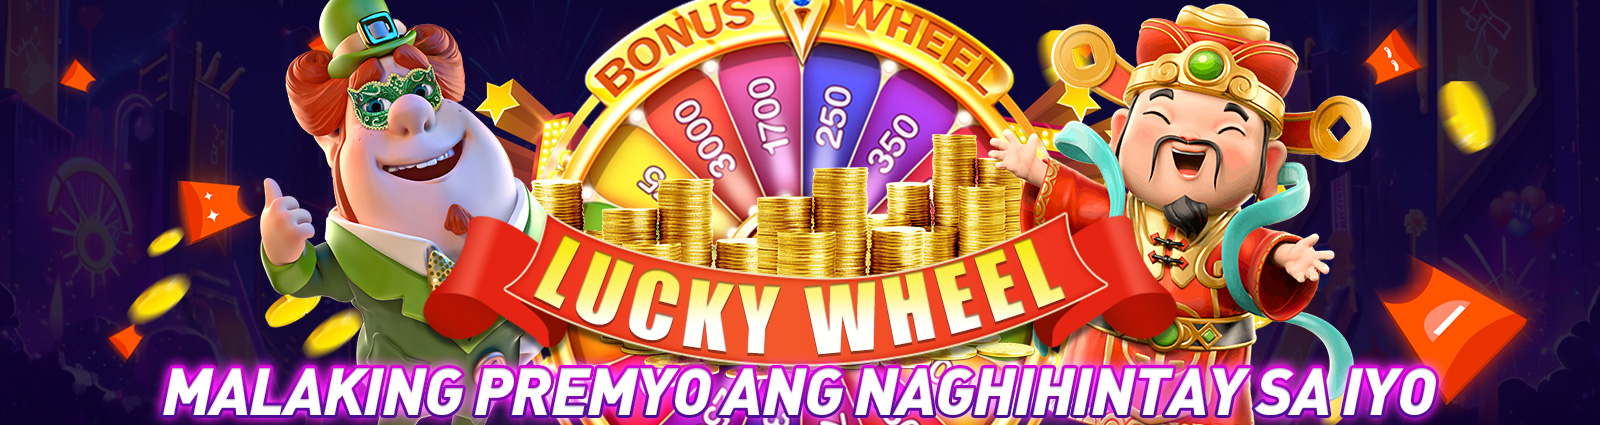 lucky wheel